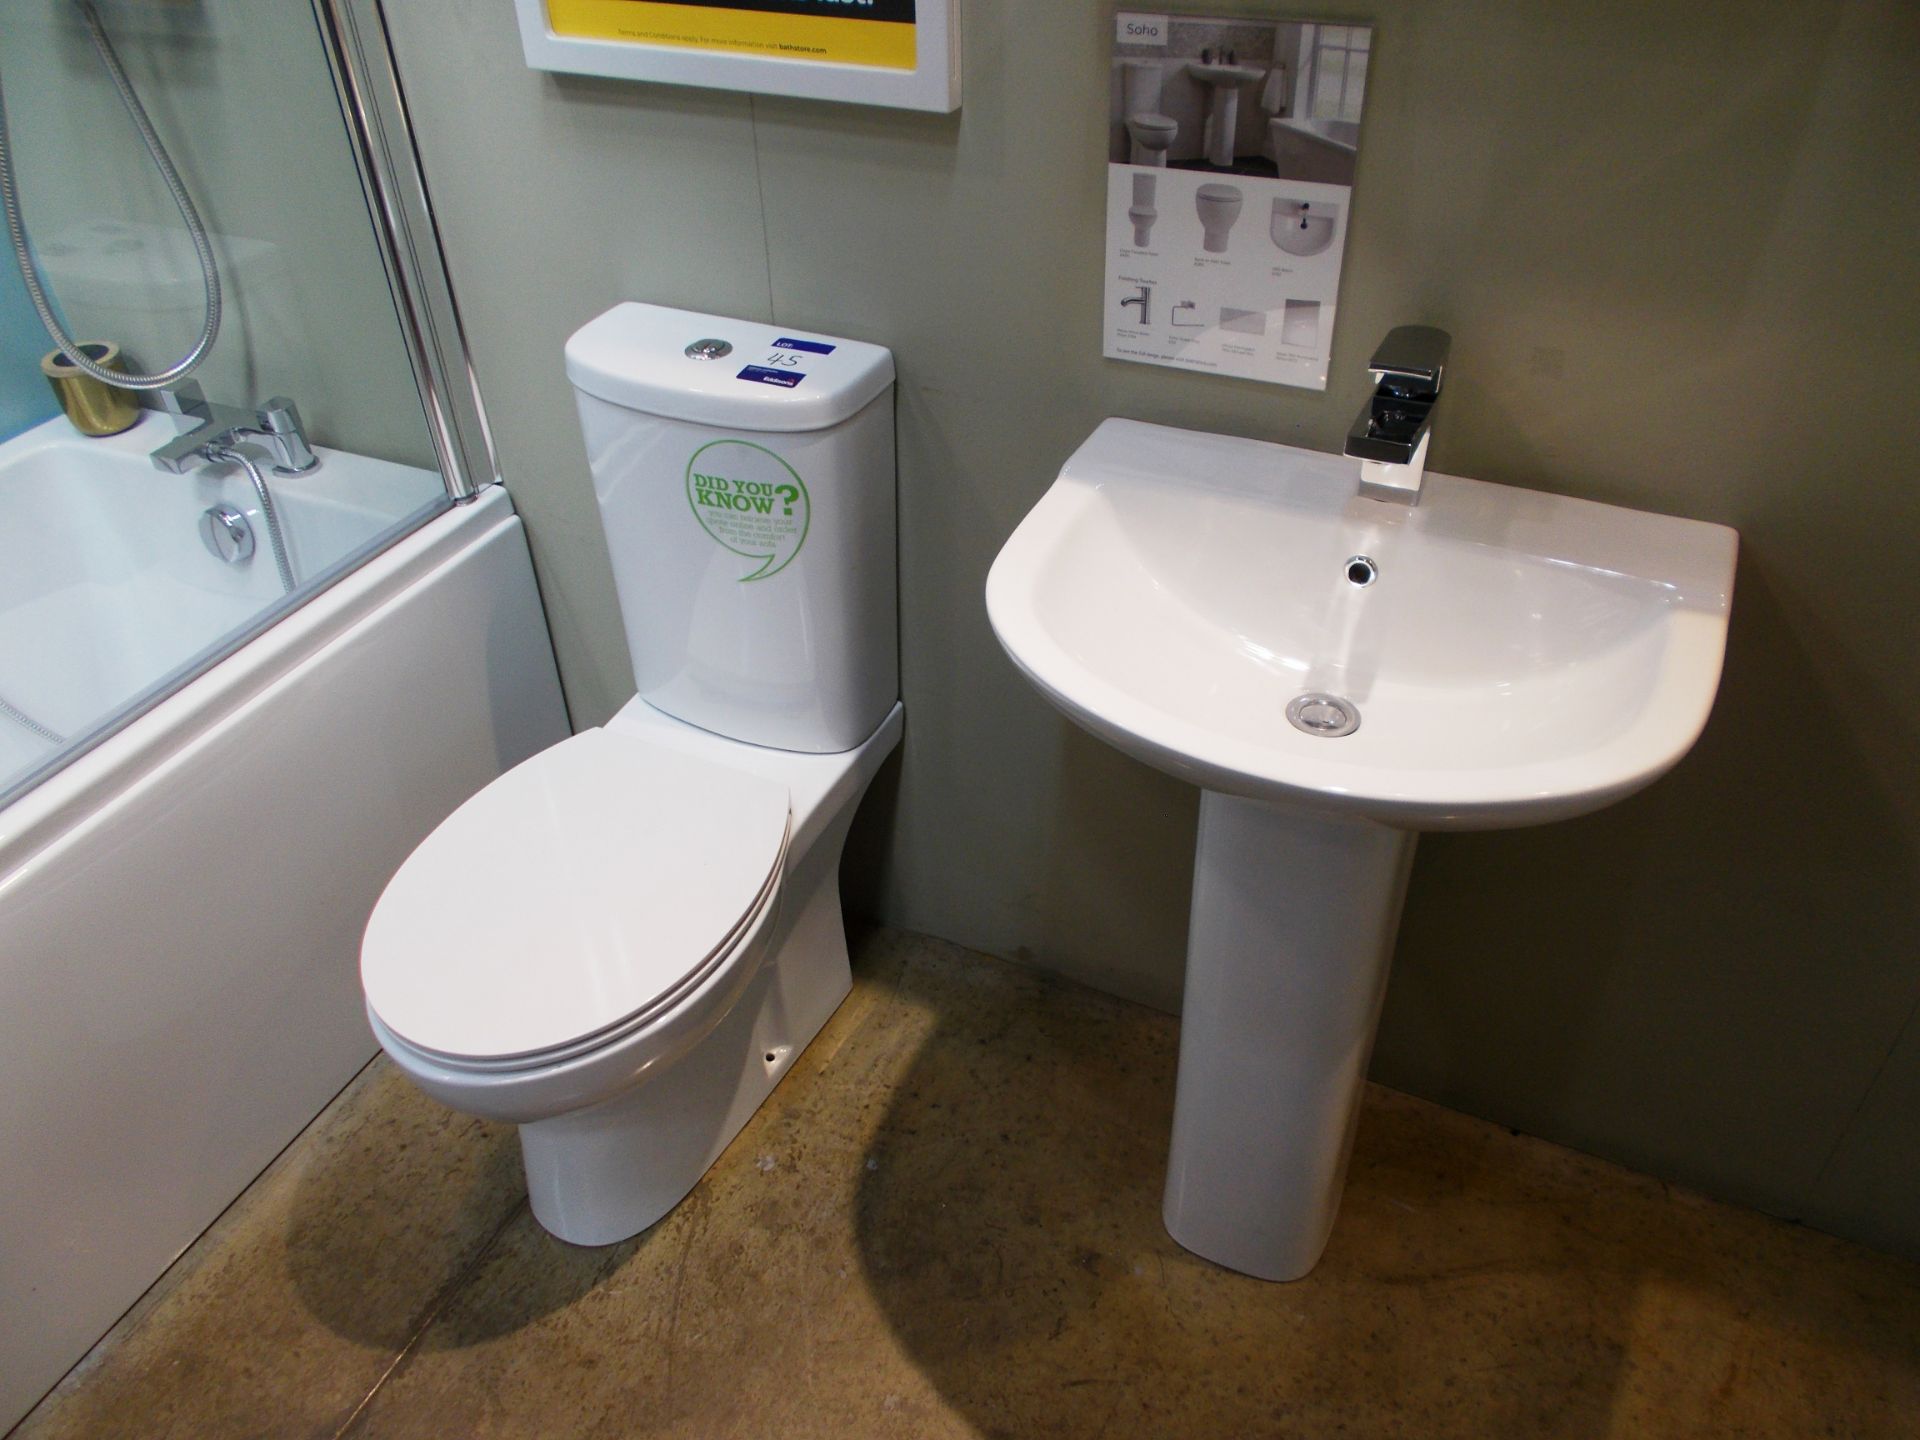 Soho basin and toilet. RRP £600